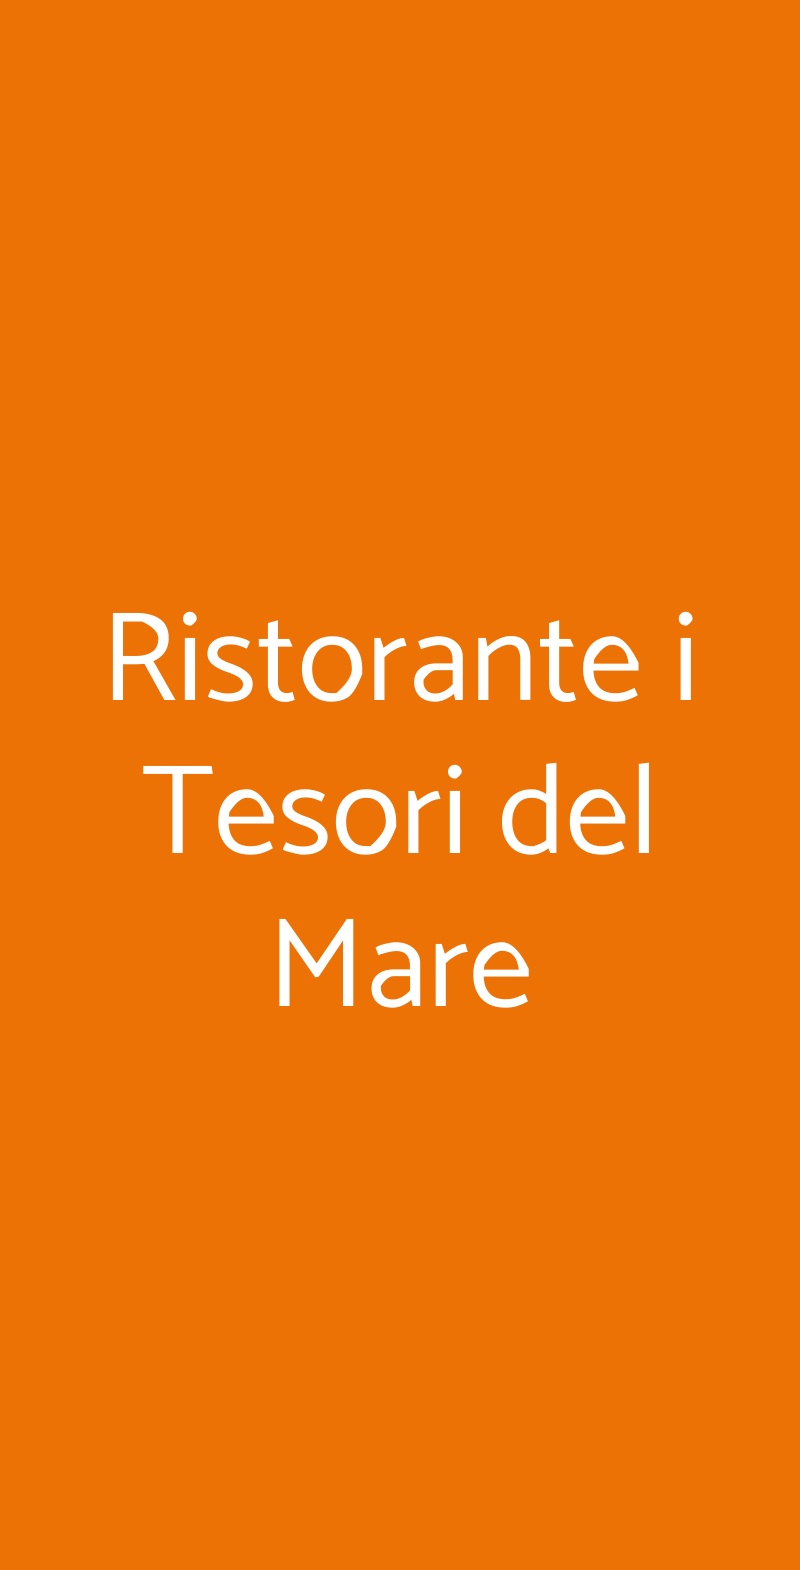 Ristorante i Tesori del Mare Milano menù 1 pagina